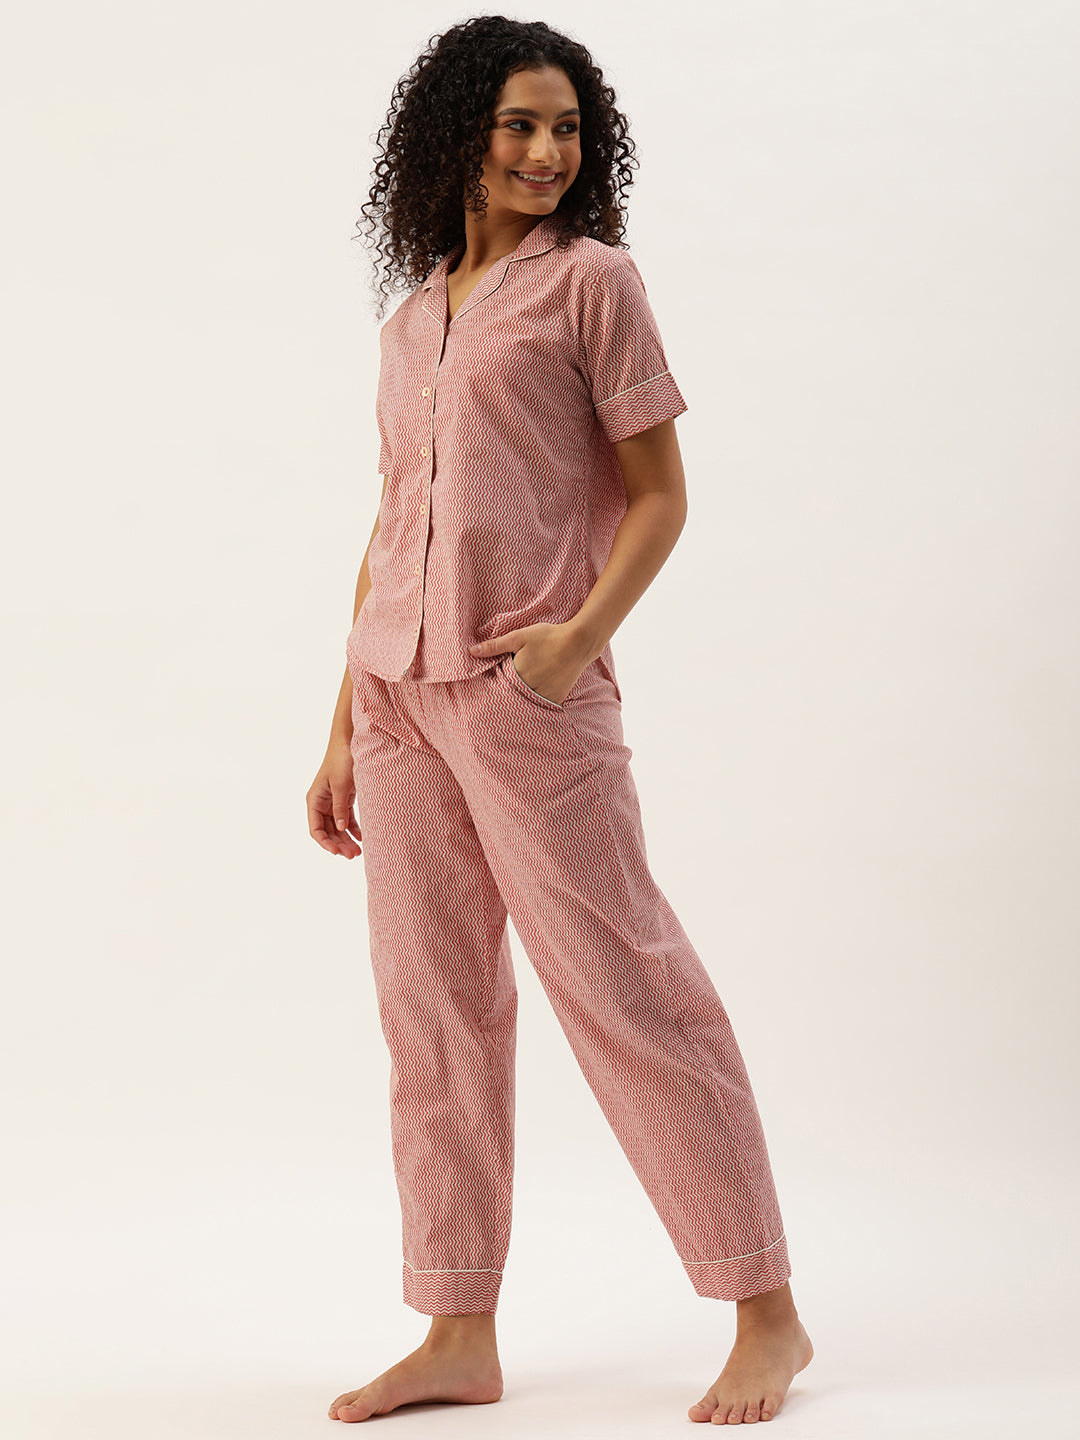 Cotton Women's Designer Sleepwear - Cotton Pyjama's